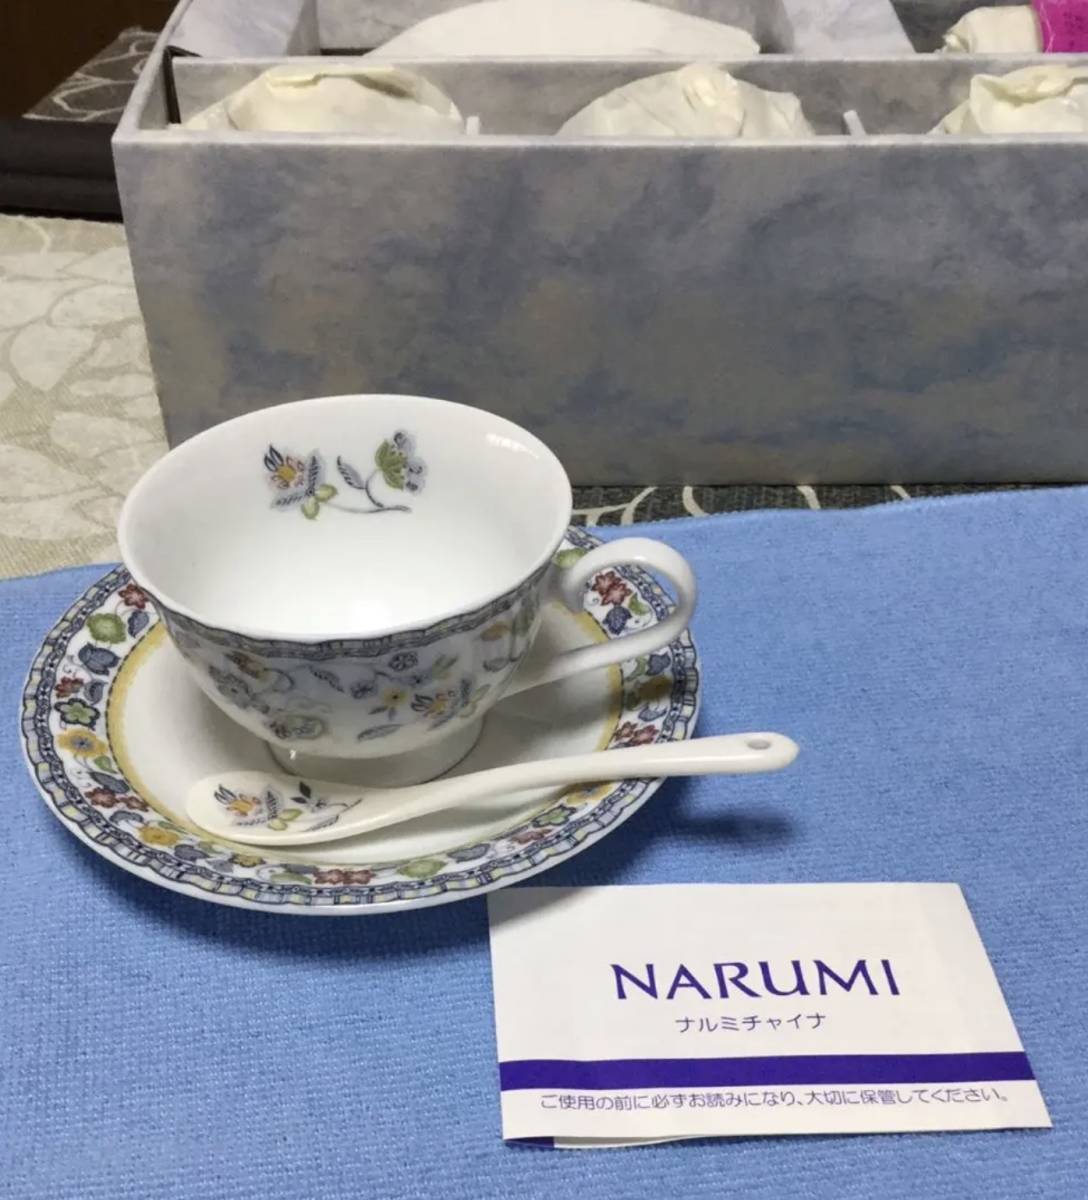 贅沢屋の 【NARUMI】スプーン付5客碗皿 ナルミ - livenationforbrands.com